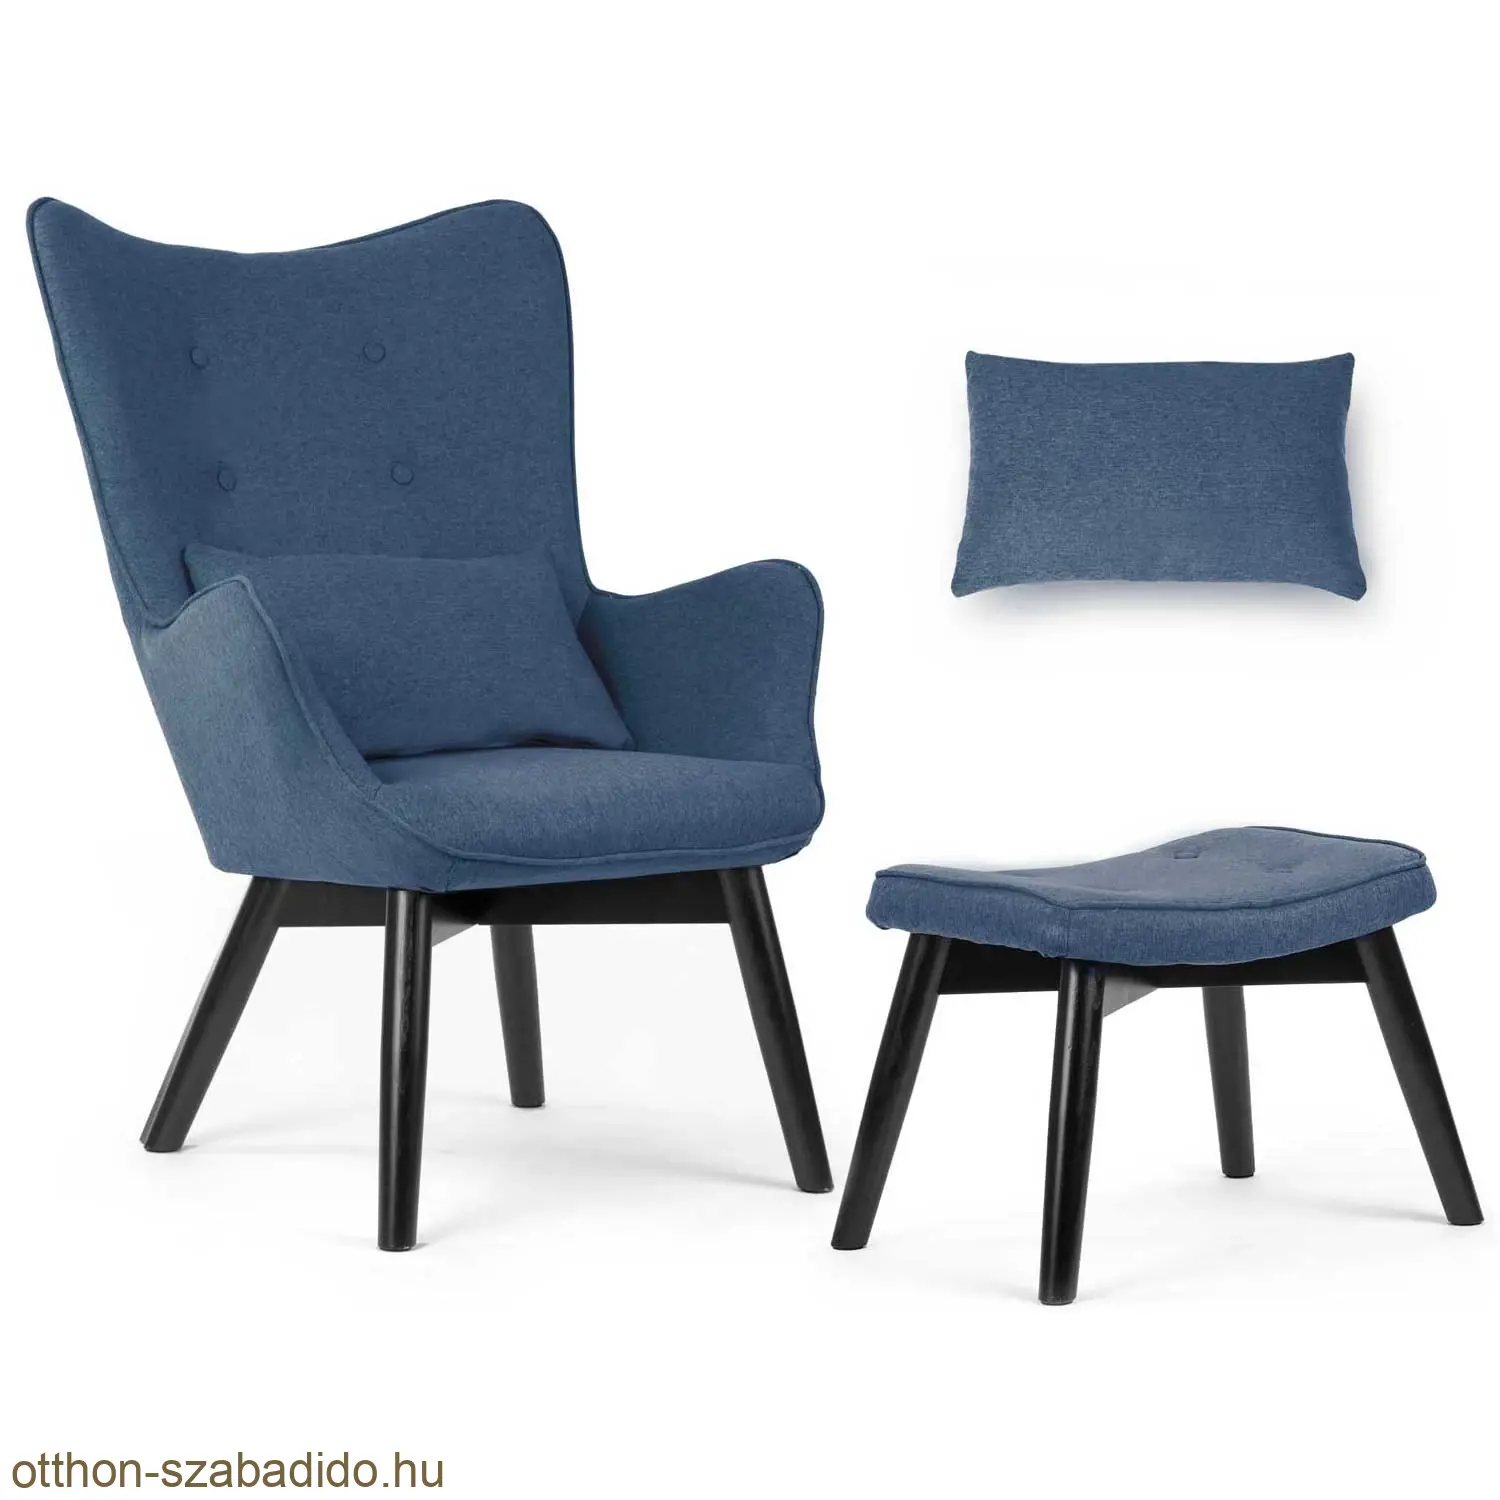 SOFOTEL skandináv stílusú szárnyas szék lábtartóval, kék